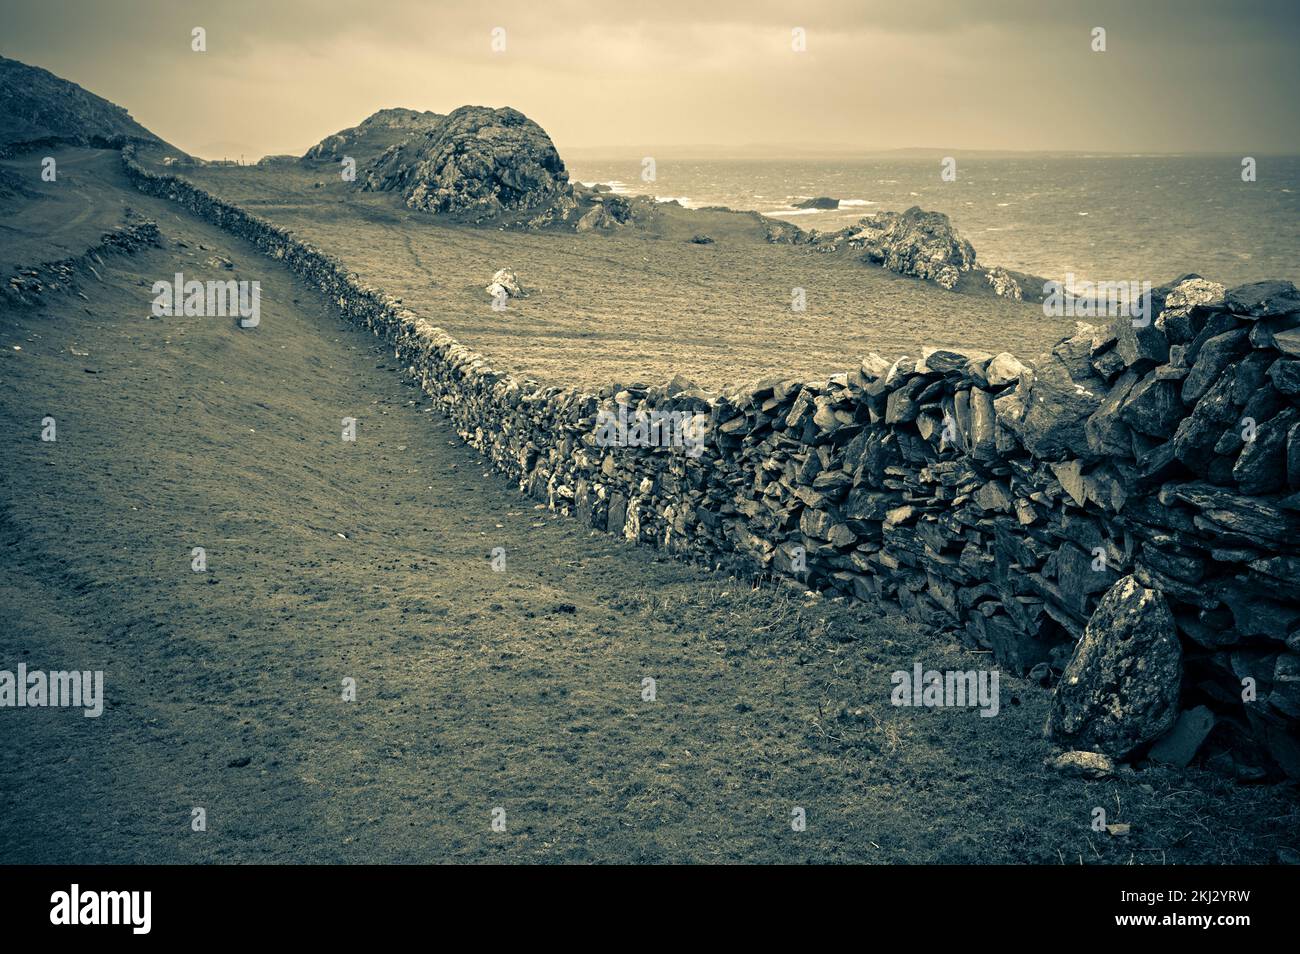 Irland, Inishbofin, eine Insel auf den westlichsten Inseln vor der irischen Küste, trockene Steinmauern Stockfoto